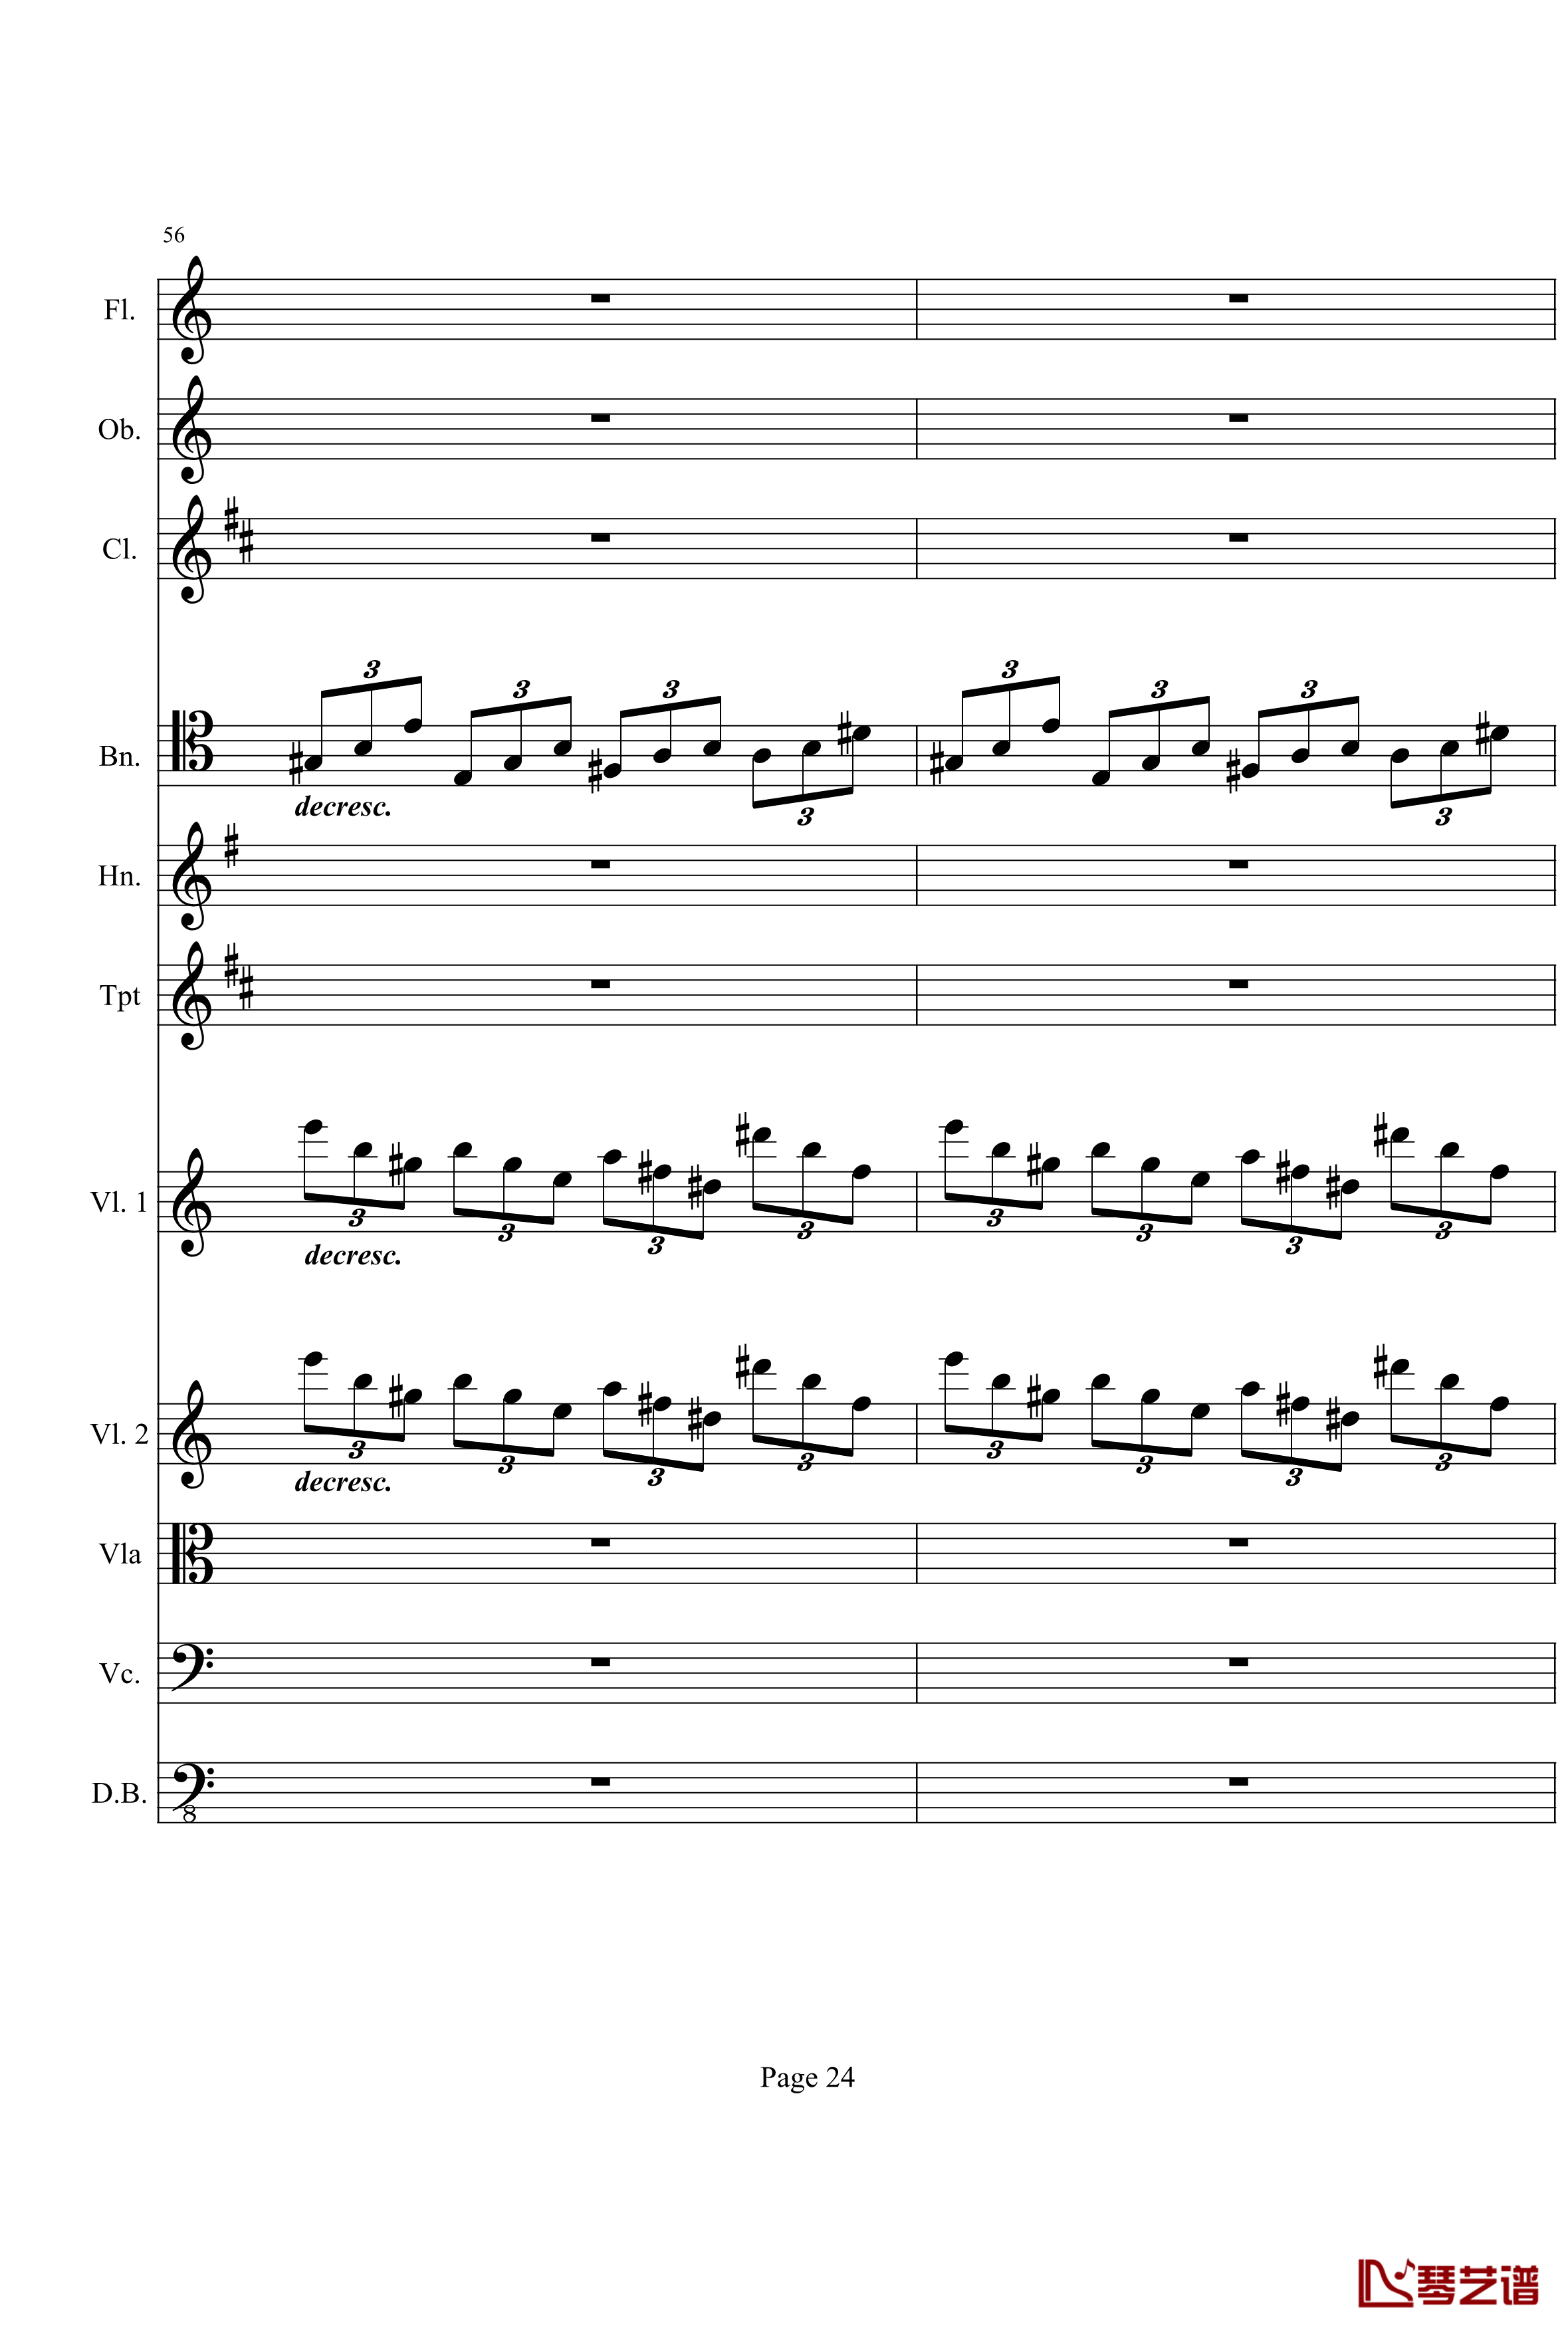 奏鸣曲之交响钢琴谱-第21首-Ⅰ-贝多芬-beethoven24